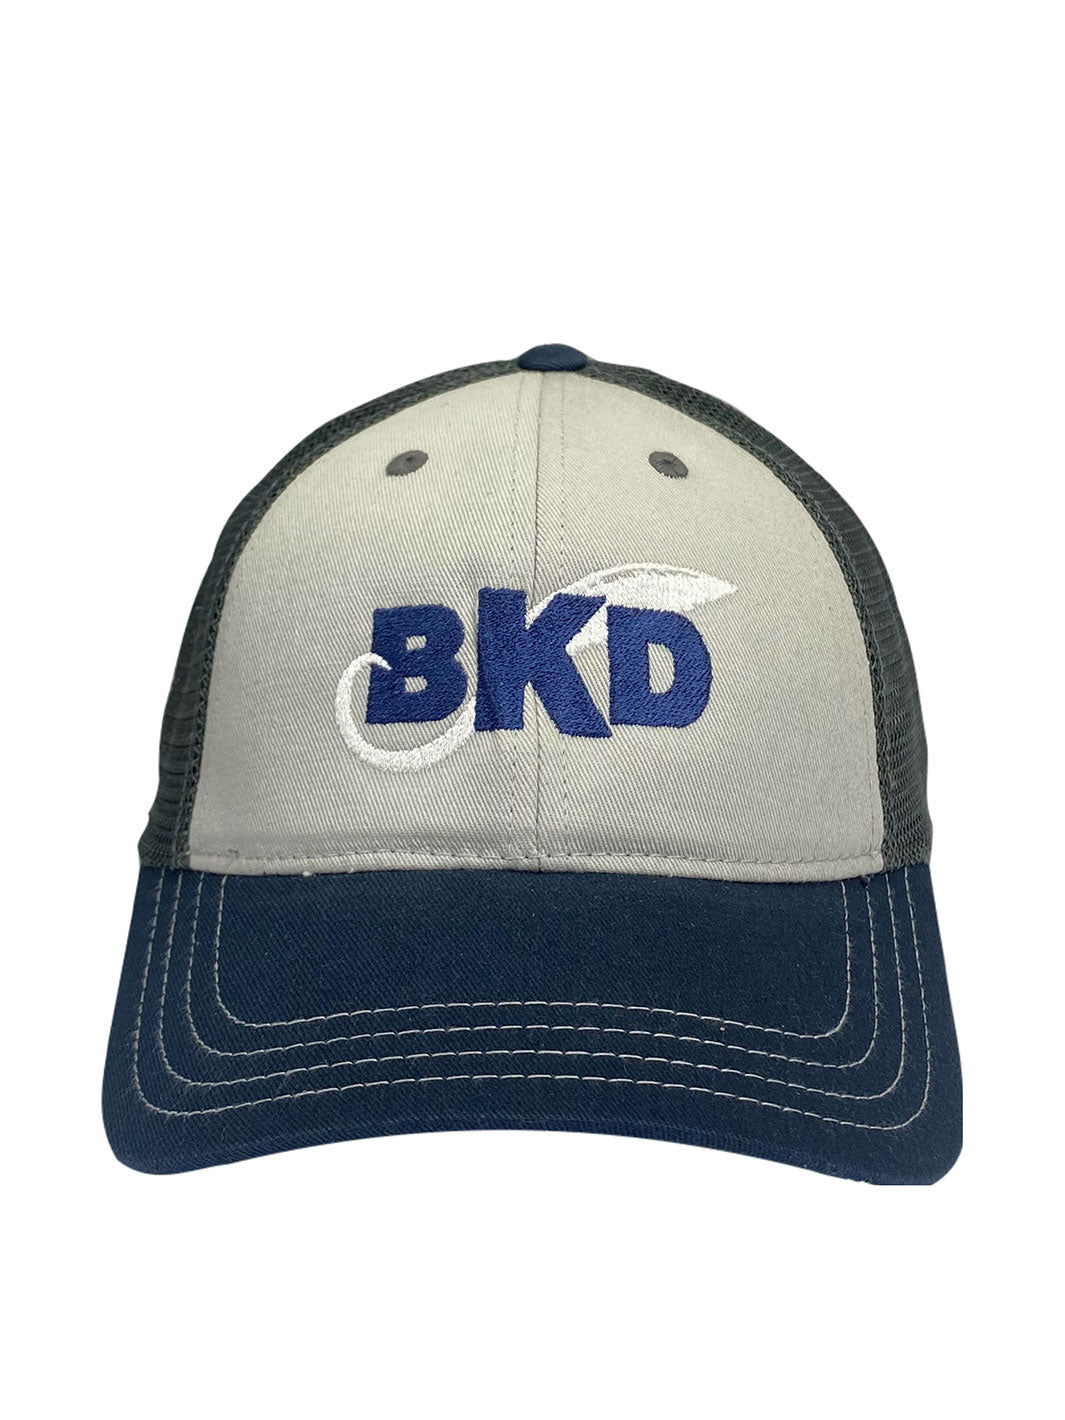 BKD Blue and Dark Green Mesh Trucker Hat